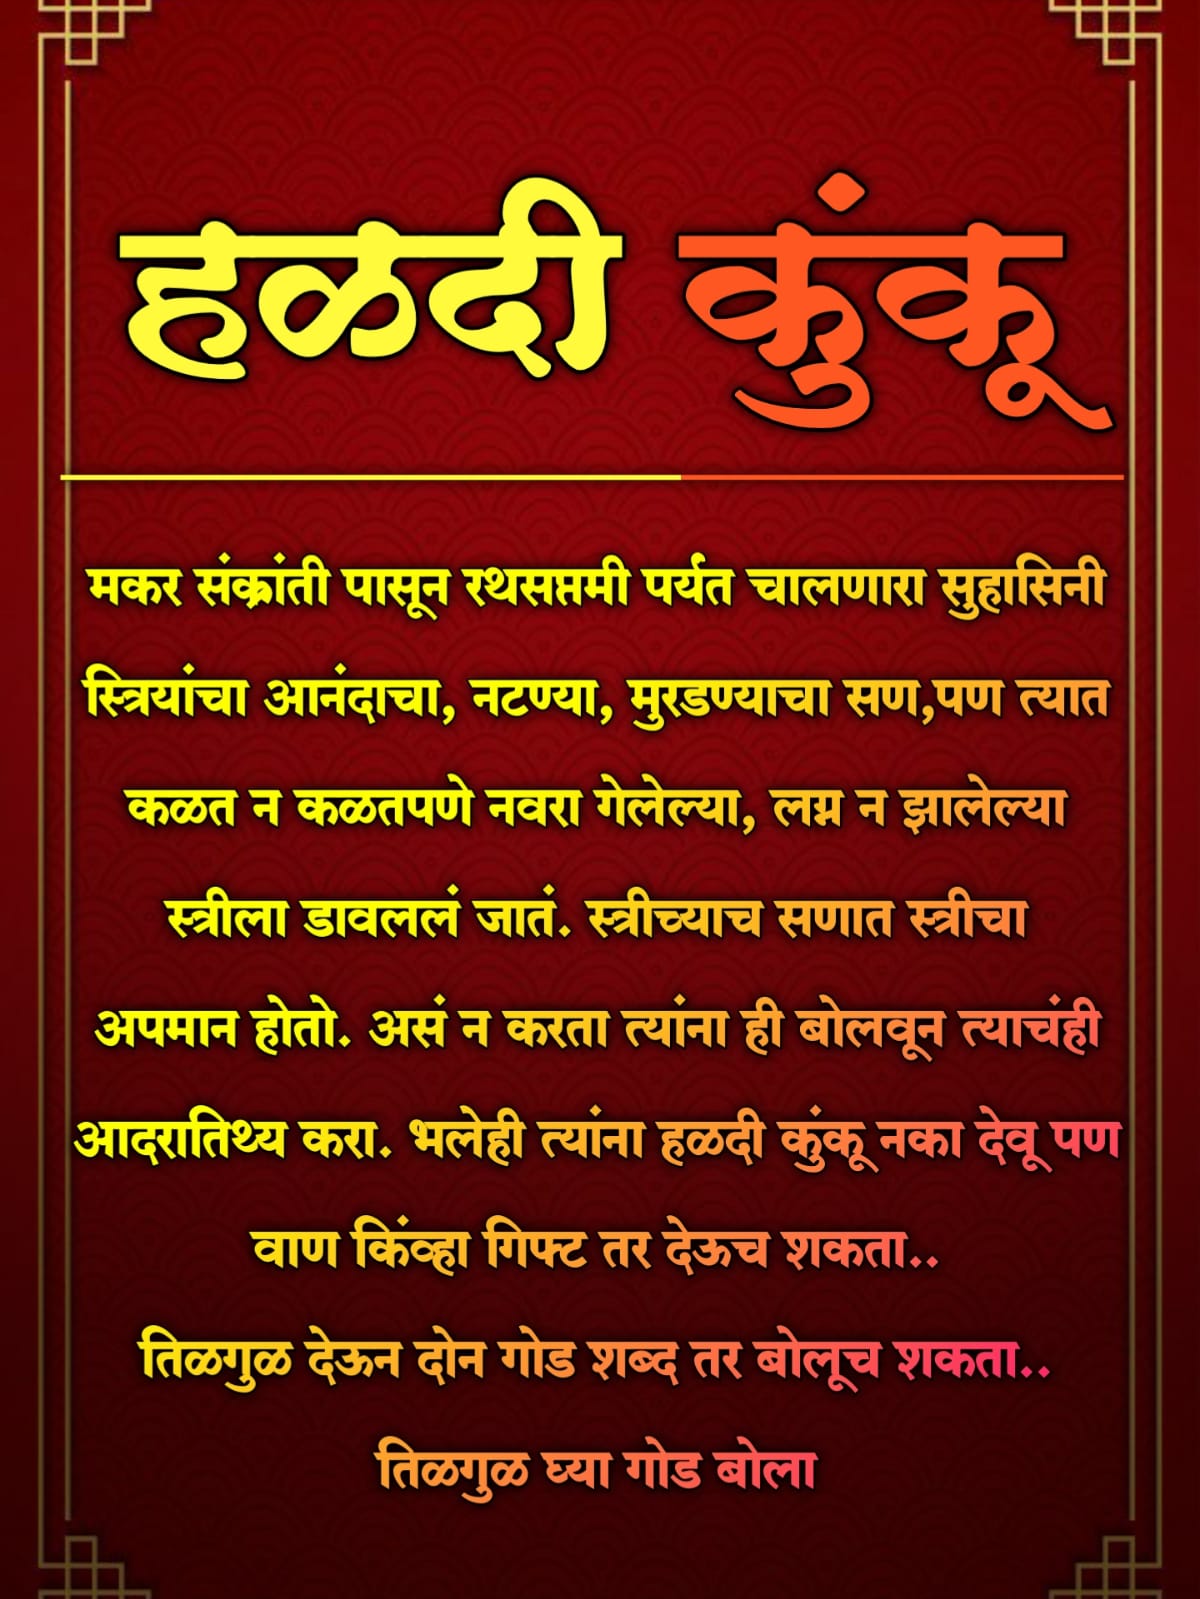 Haldi Kunku Invitation Marathi Messages 6 -